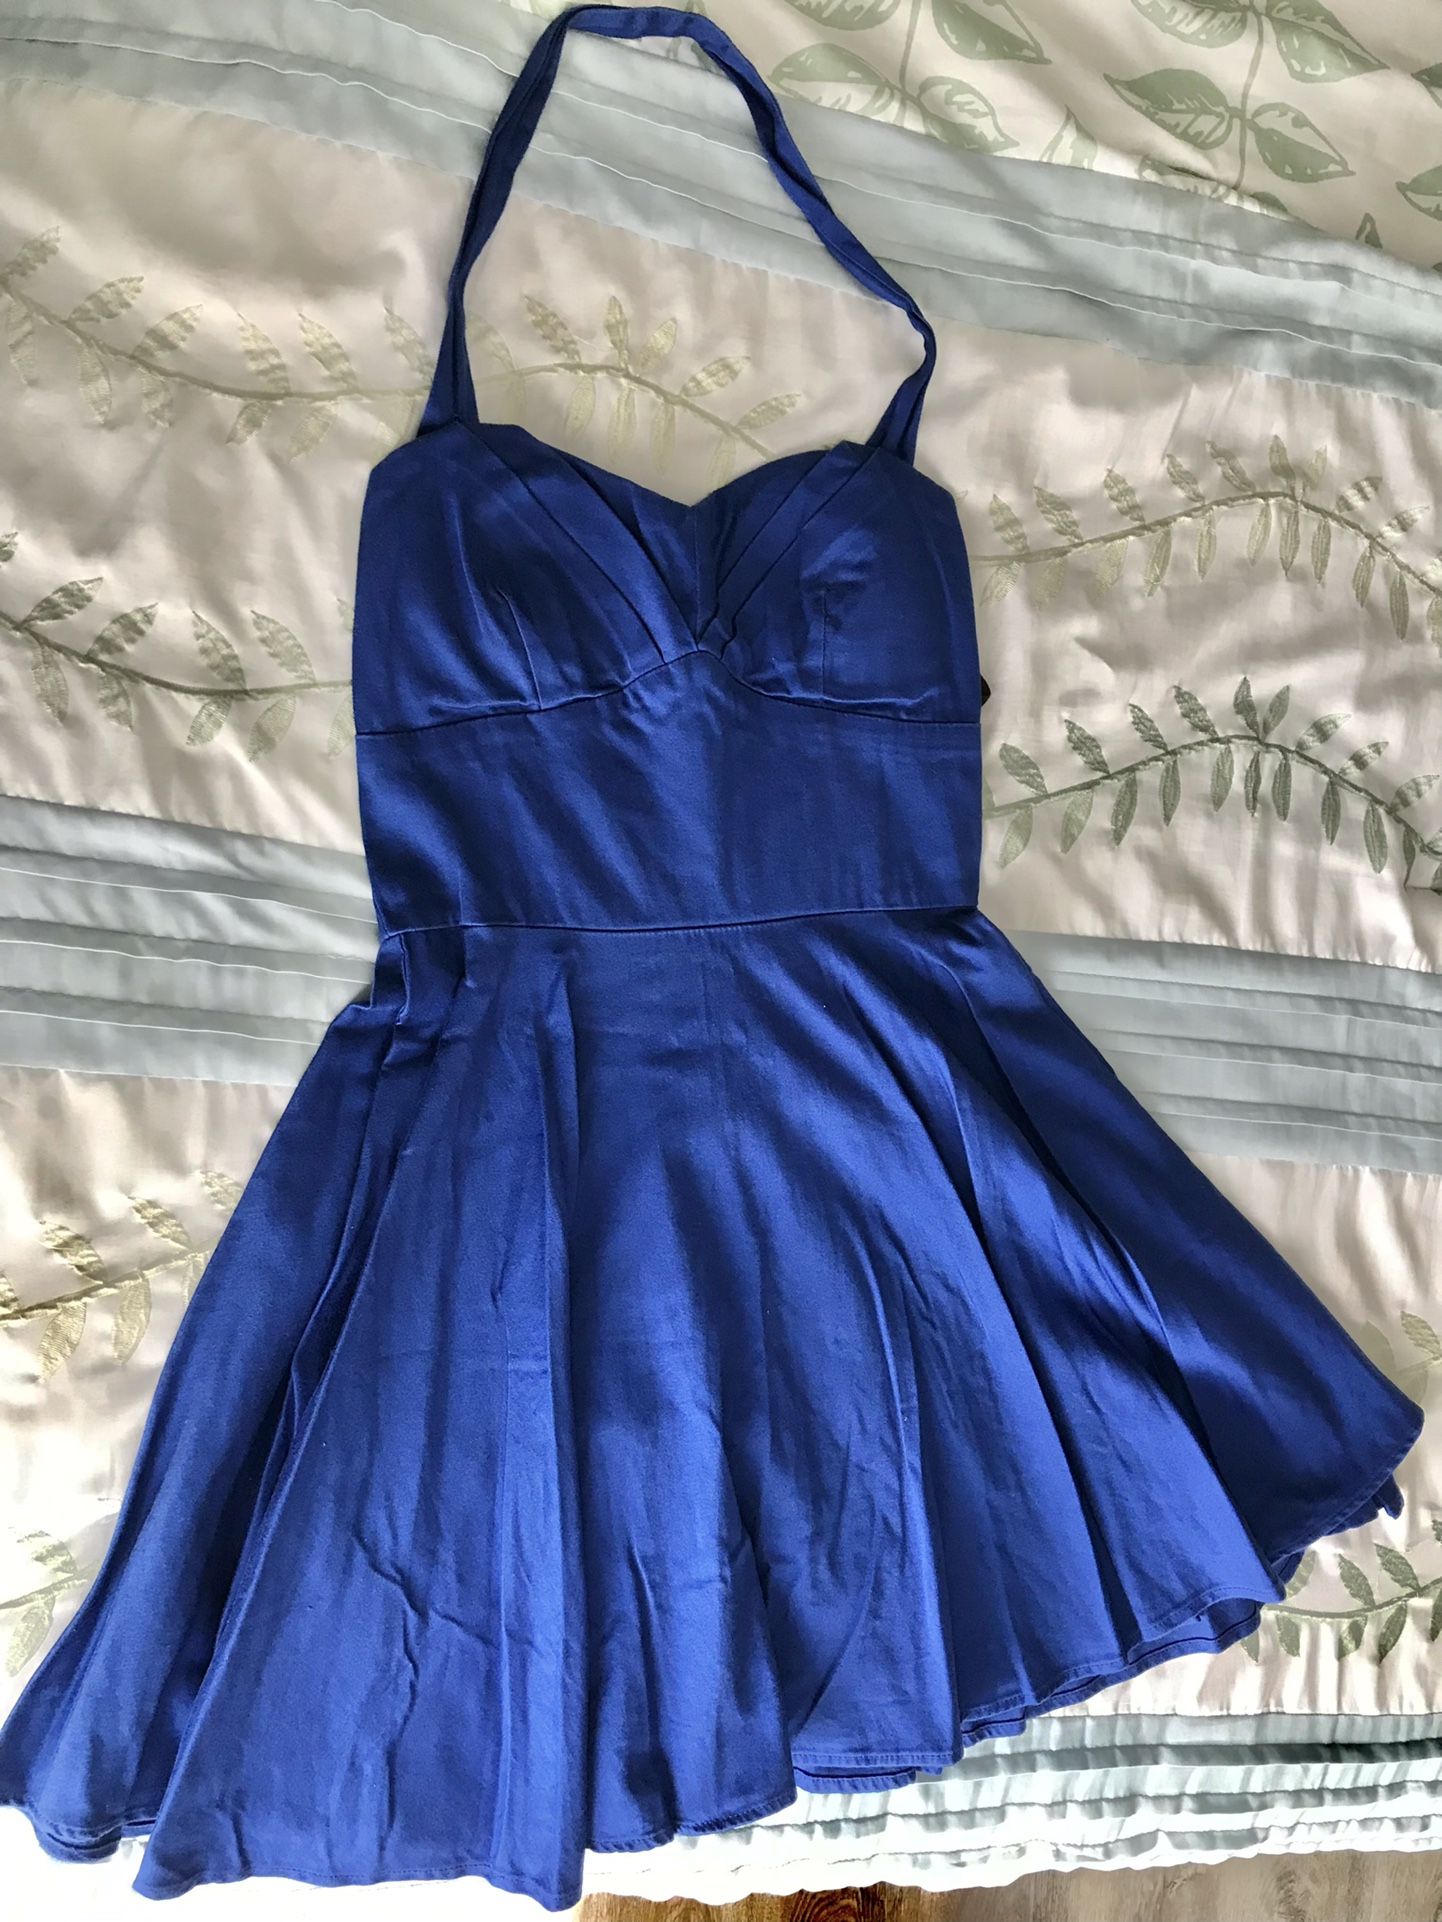 Halter Top Vintage Little Blue Dress